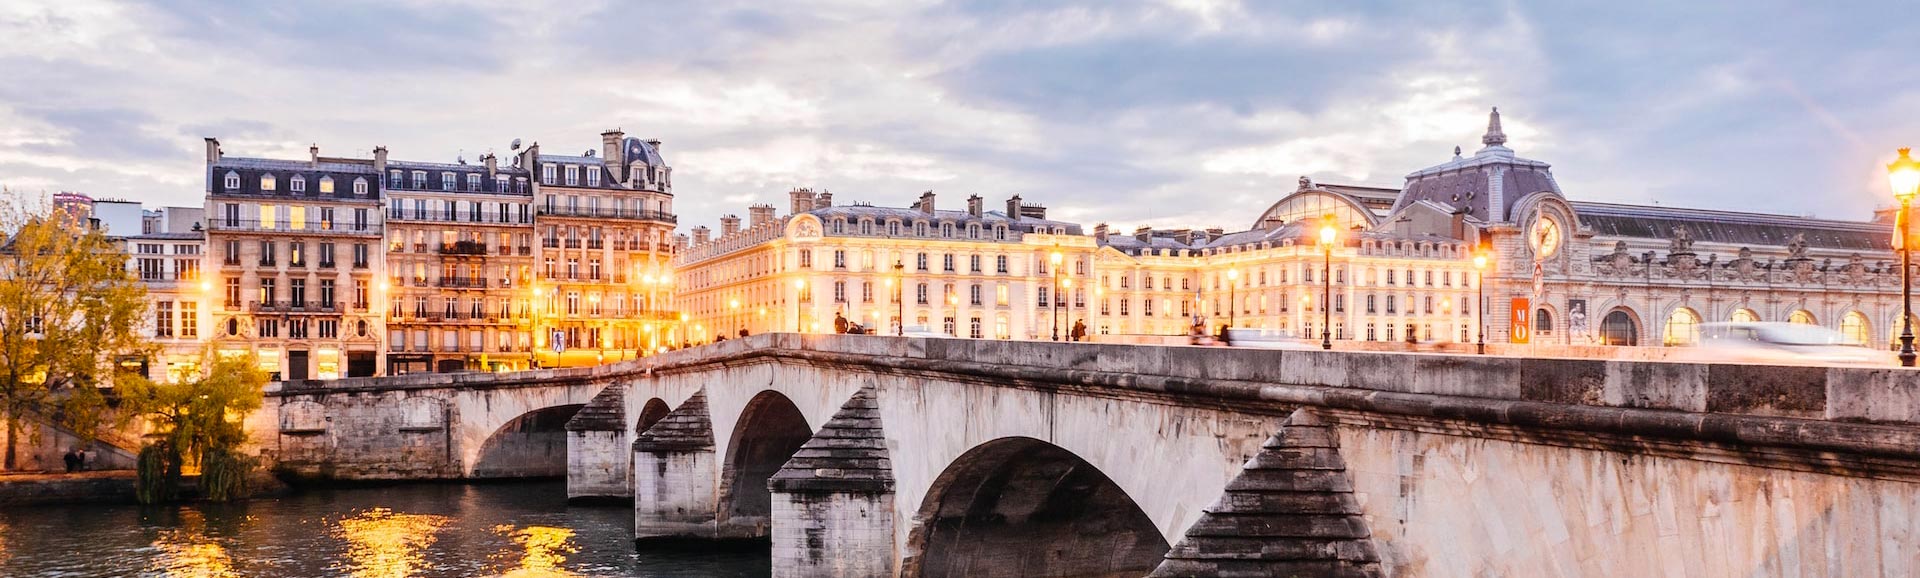 Edifícios parisienses com ponte e rio em primeiro plano